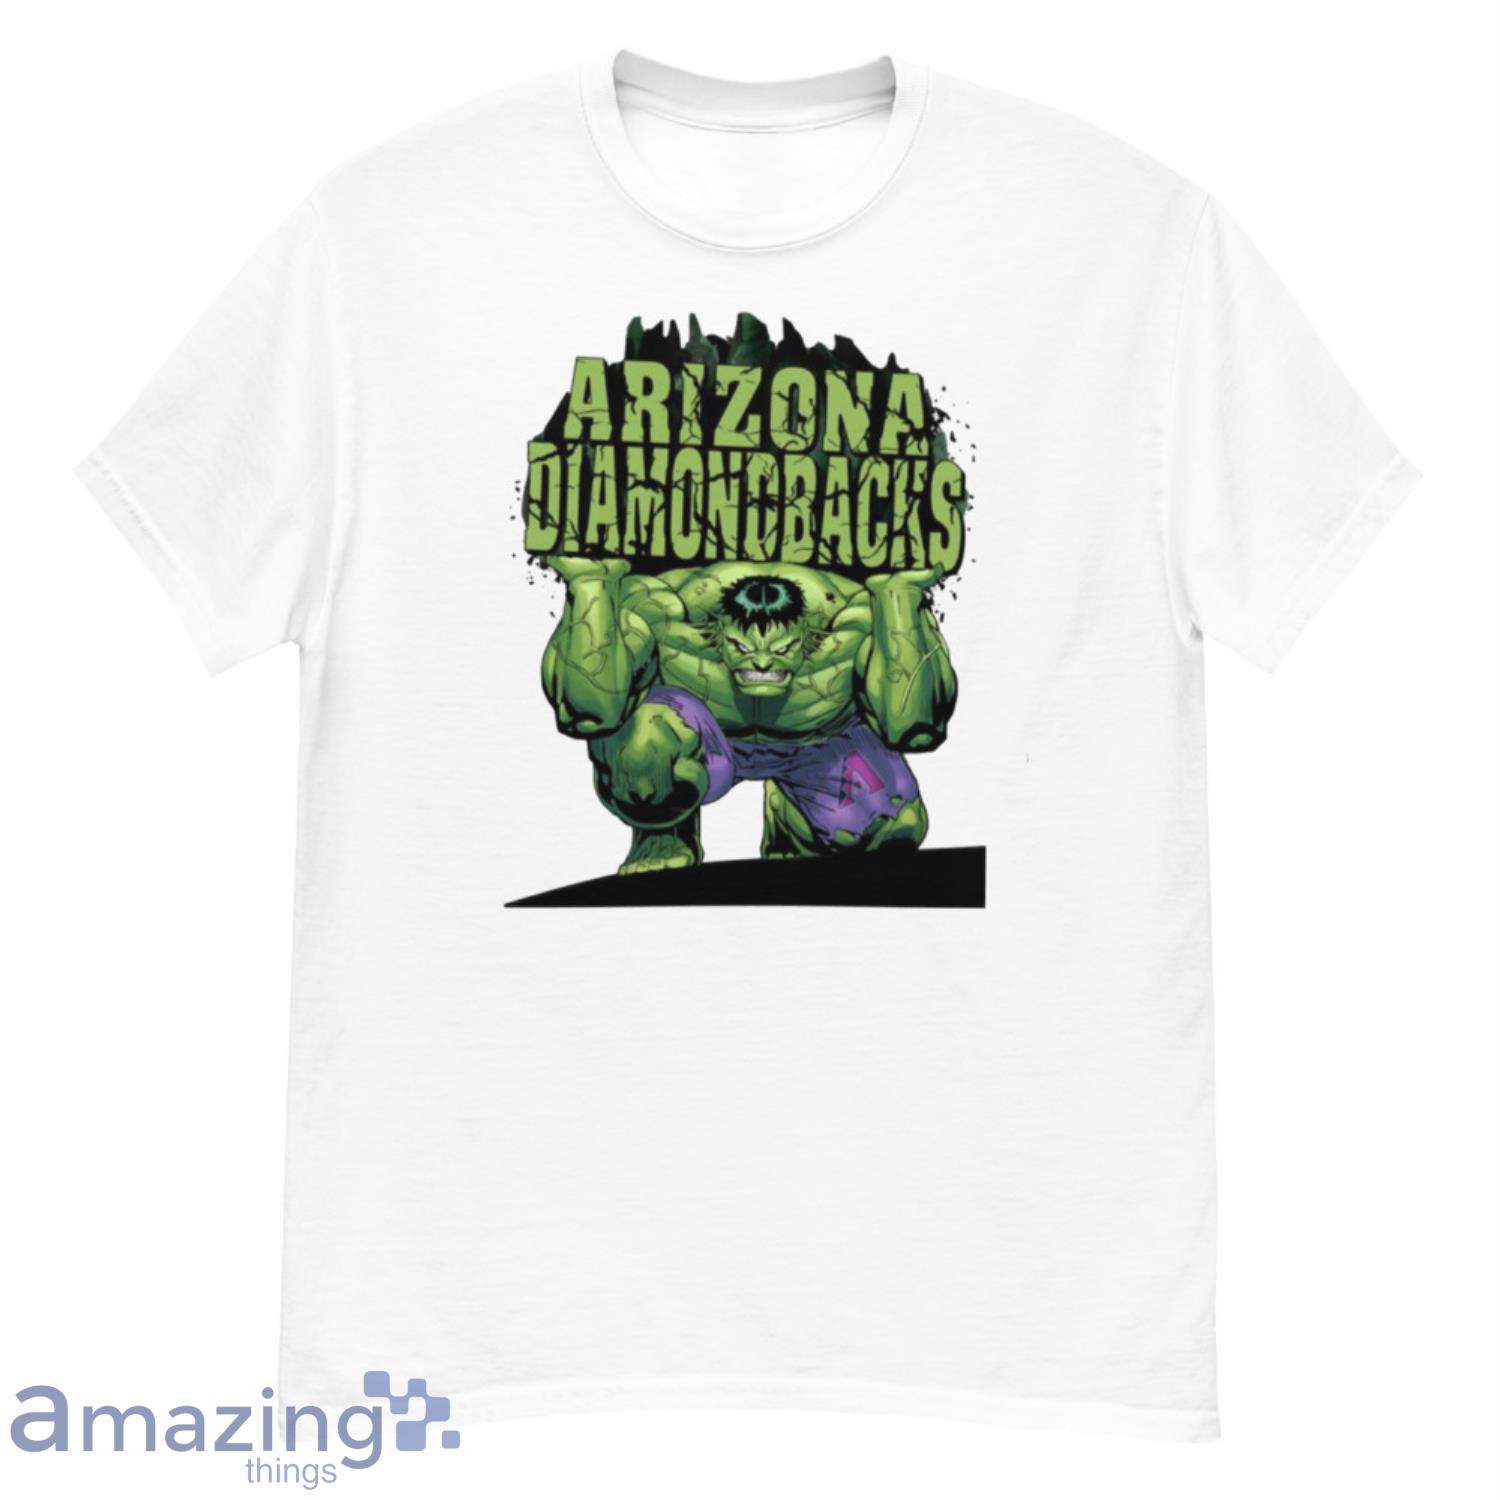 Arizona Diamondbacks Shirt Arizona Diamondbacks T Shirt